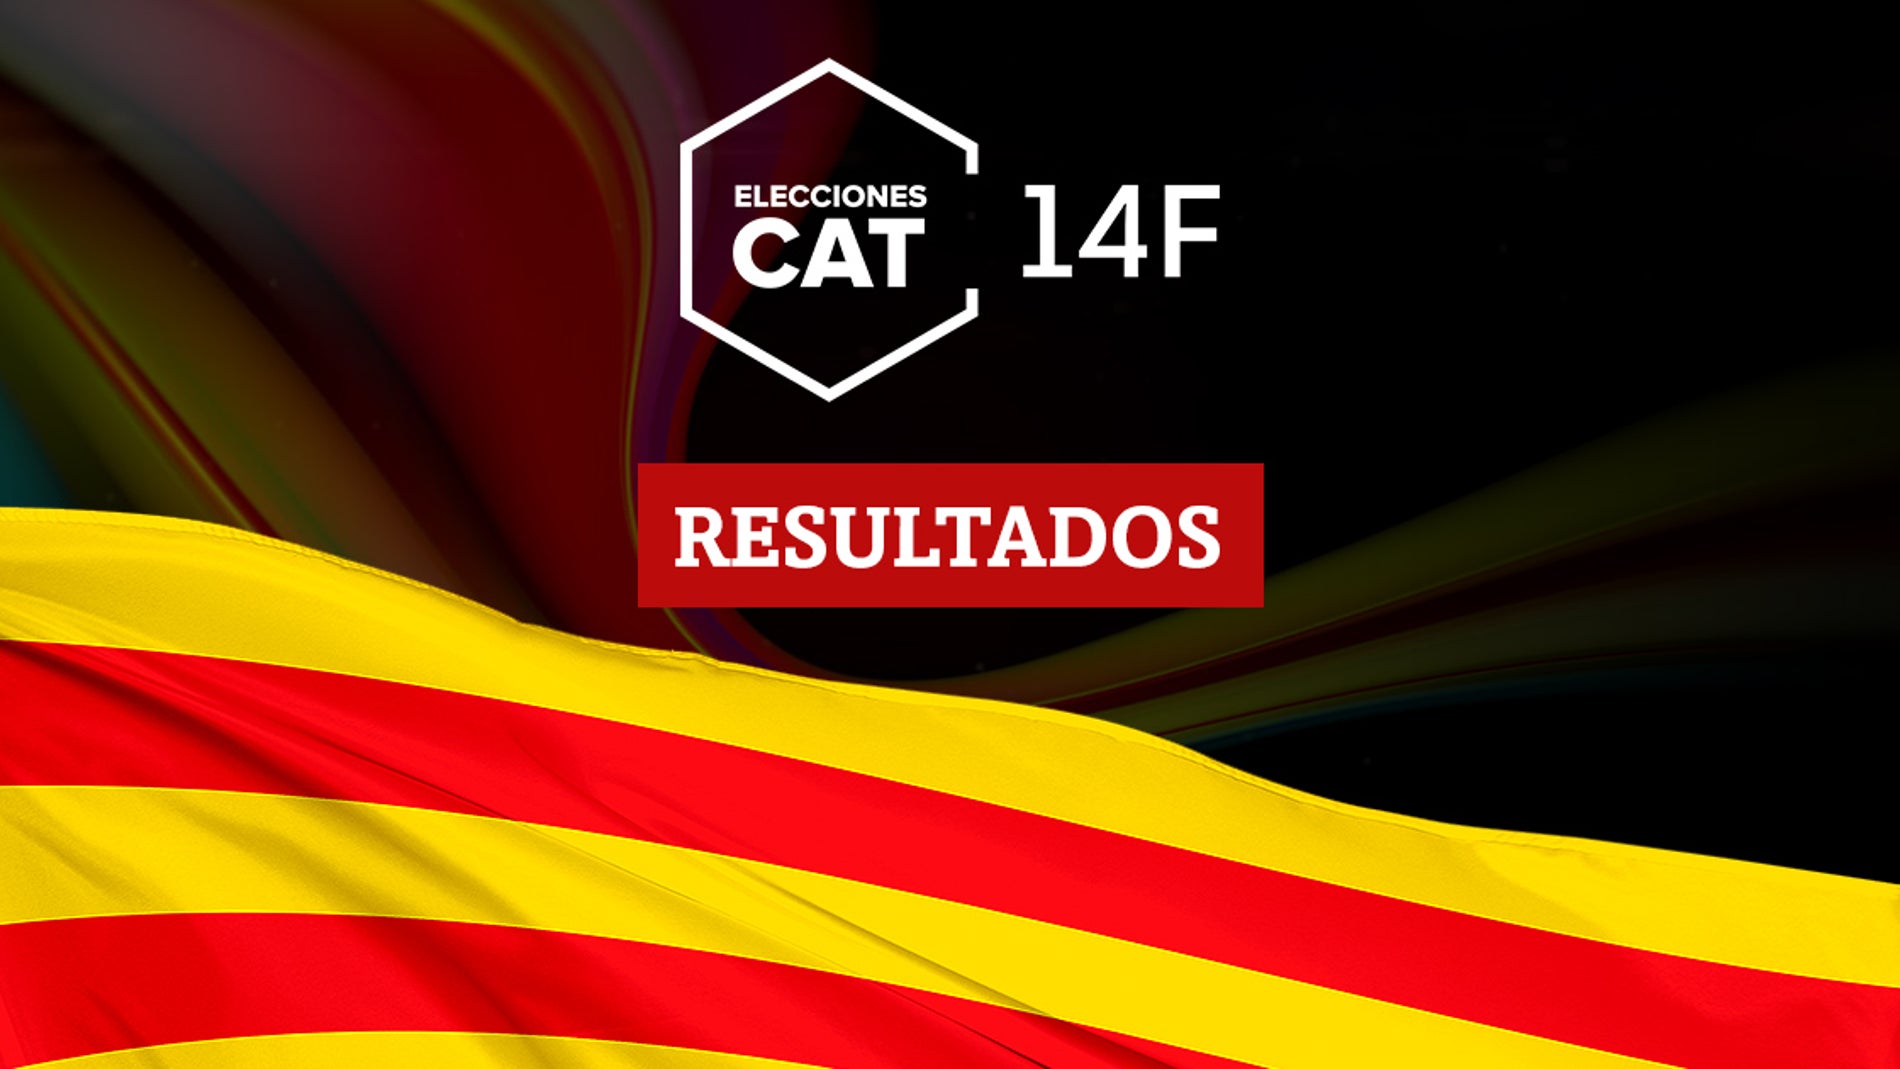 Resultados en Fontcoberta de las elecciones catalanas del 14F 2021